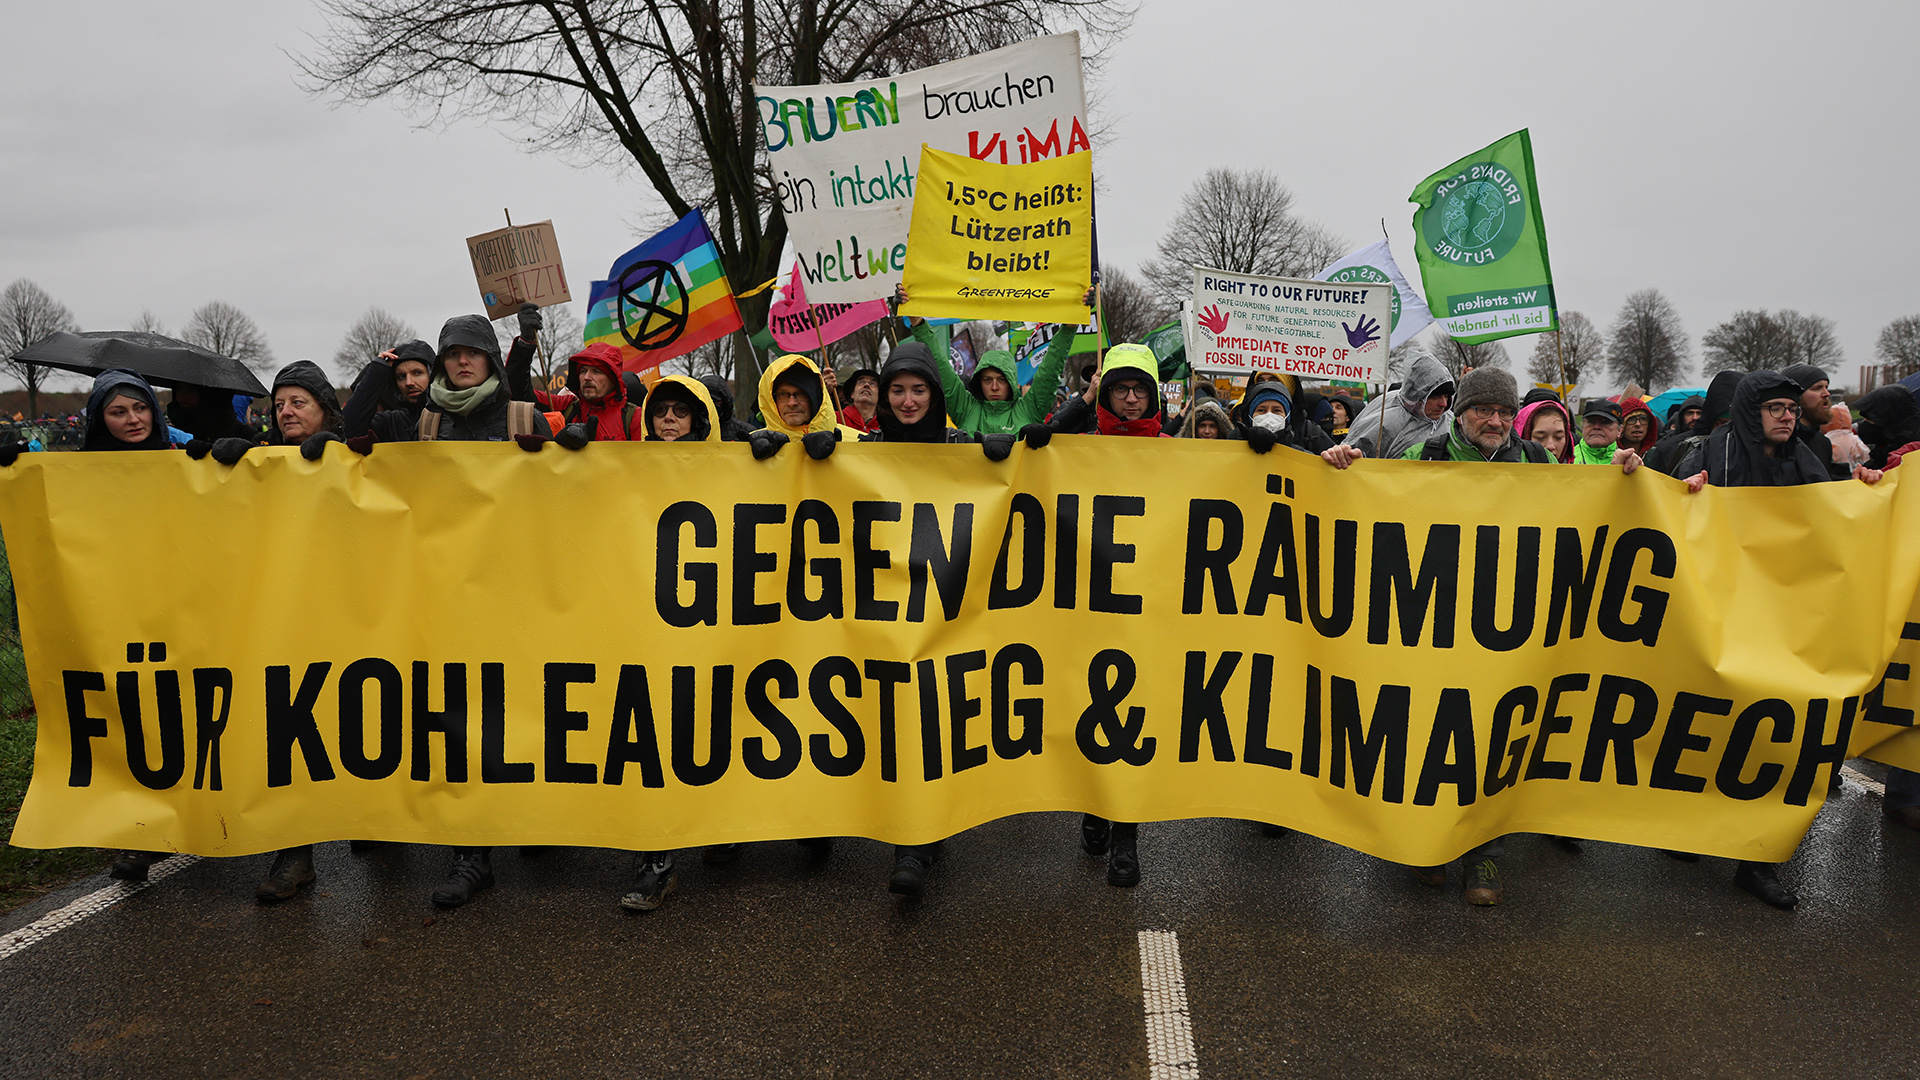 "Gegen die Räumung, für Kohleausstieg und Klimagerechtigkeit" ist auf dem Transparent zu lesen, das von Demonstranten in Erkelenz getragen wird, NRW. | dpa